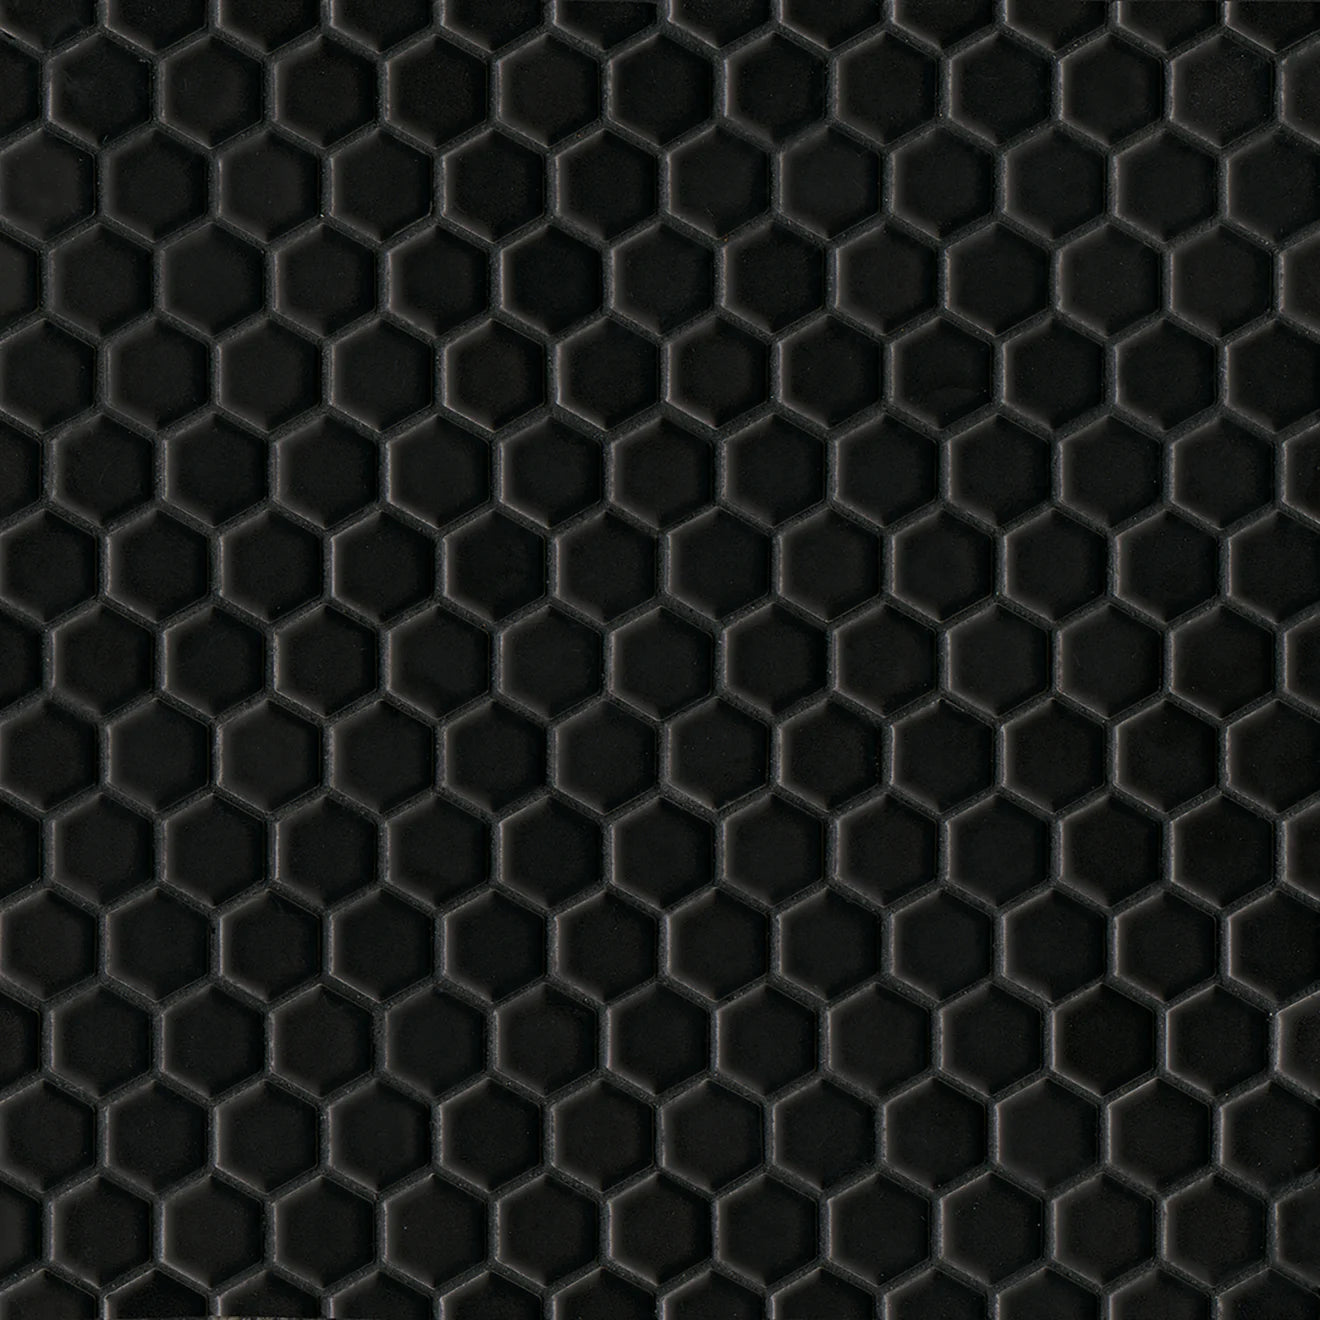 Le Café 1" x 1" Black Matte Hexagon Mosaic Tile